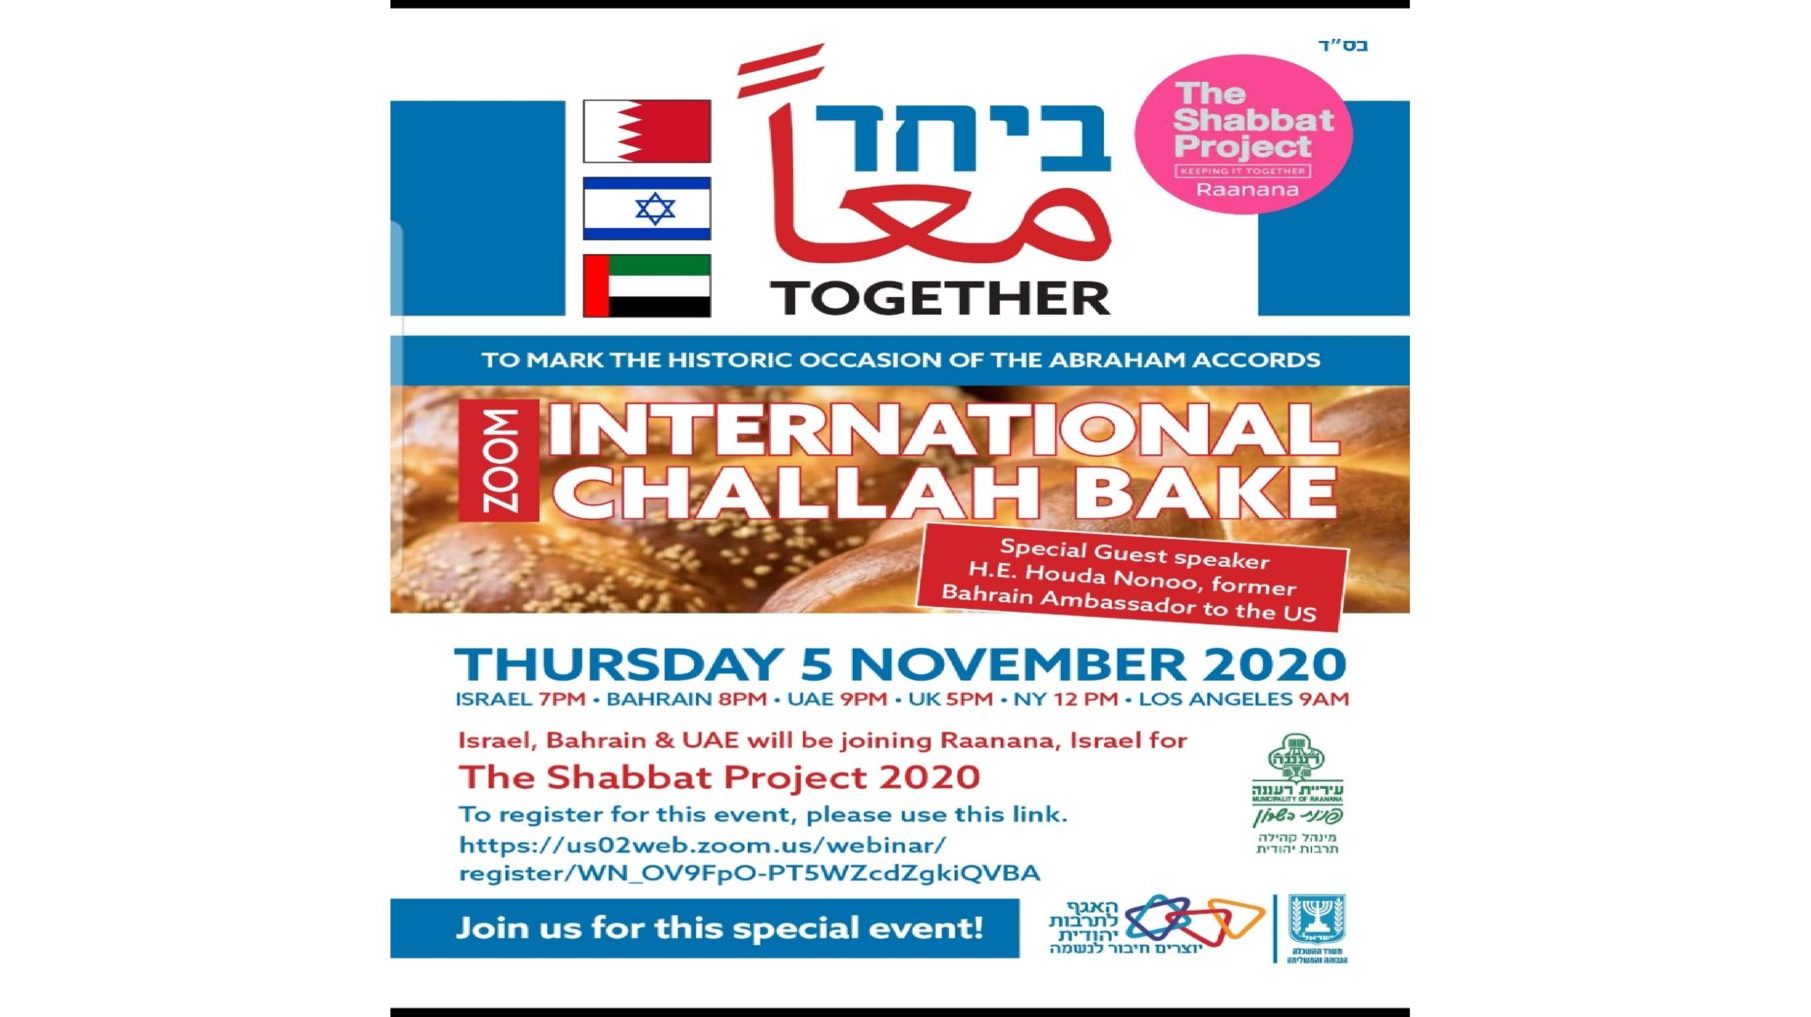 Int’l Challah Bake Marking Historic Abraham Accords